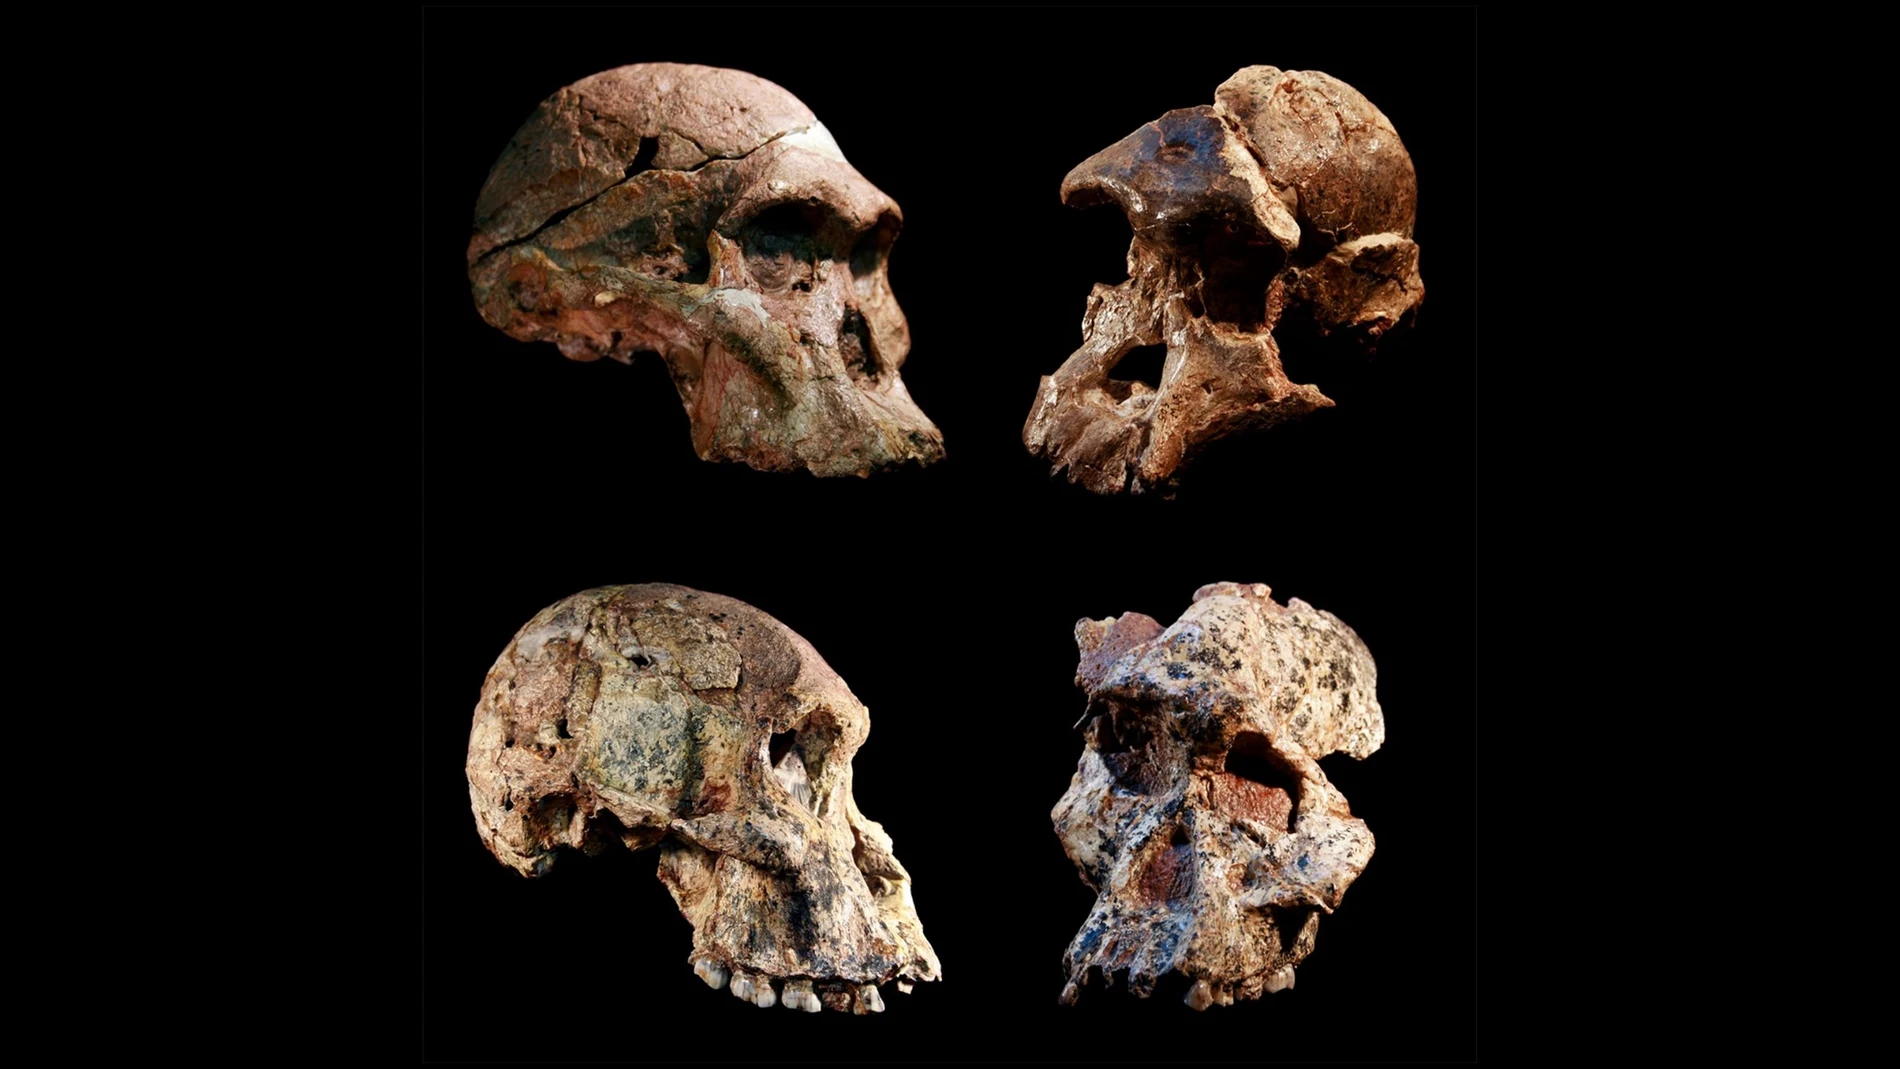 Cuatro cráneos diferentes de australopitecos encontrados en las cuevas de Sterkfontein (Sudáfrica). El relleno de la cueva de Sterkfontein, que contiene este y otros fósiles de australopitecos, tiene entre 3,4 y 3,6 millones de años.